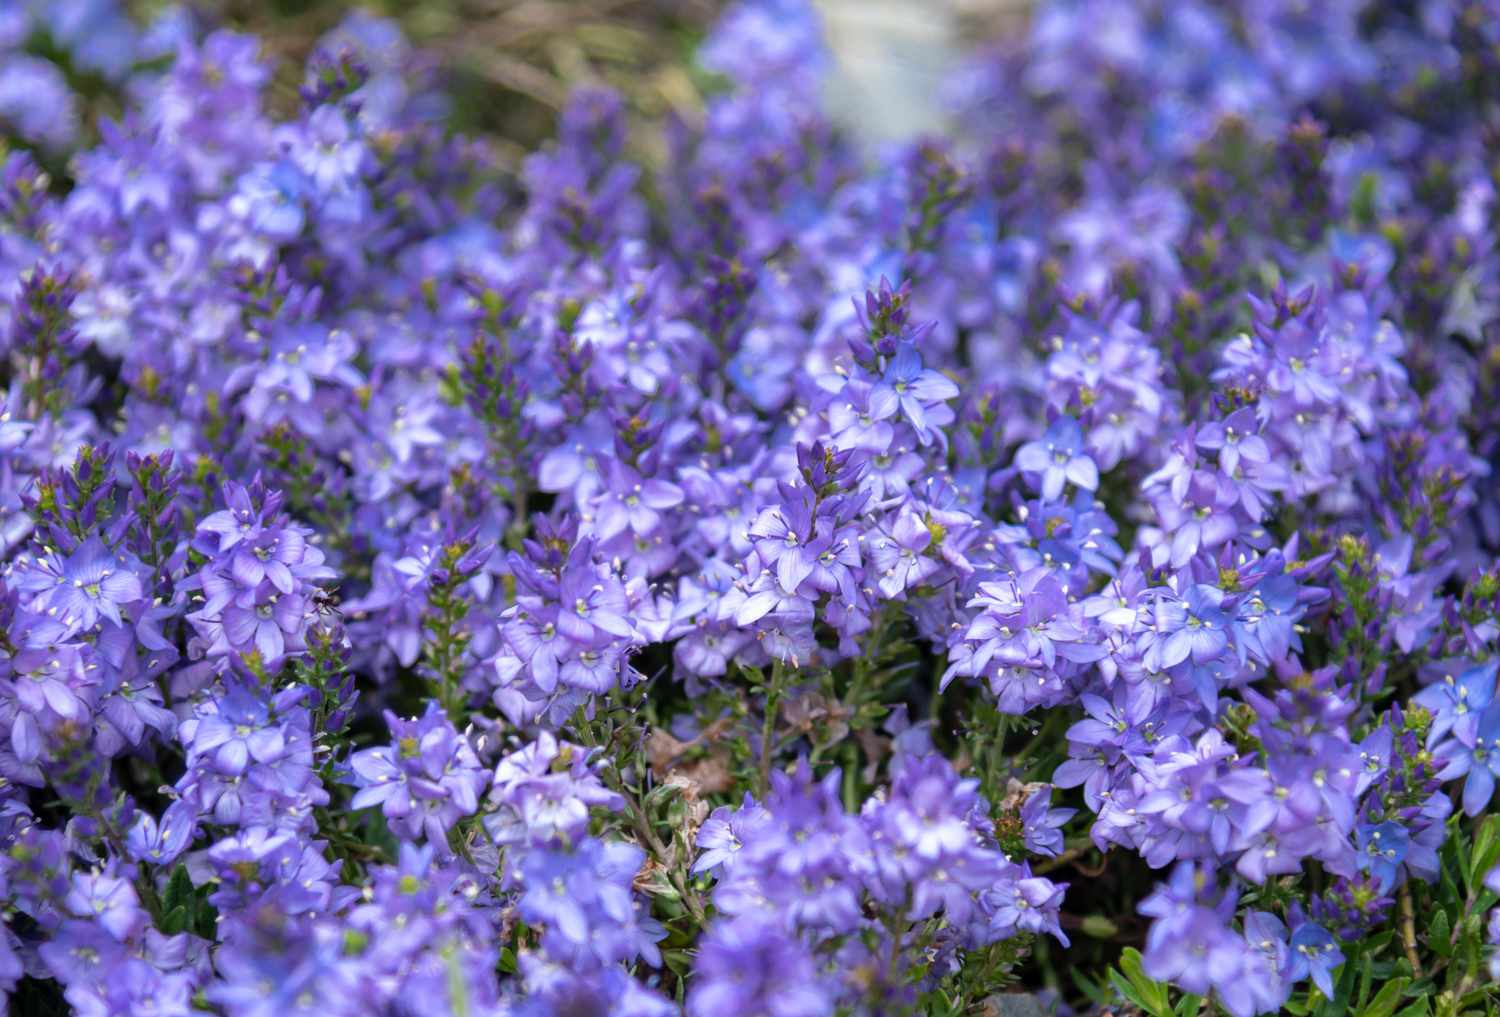 Verónica planta tapizante con flores de color morado claro y azul